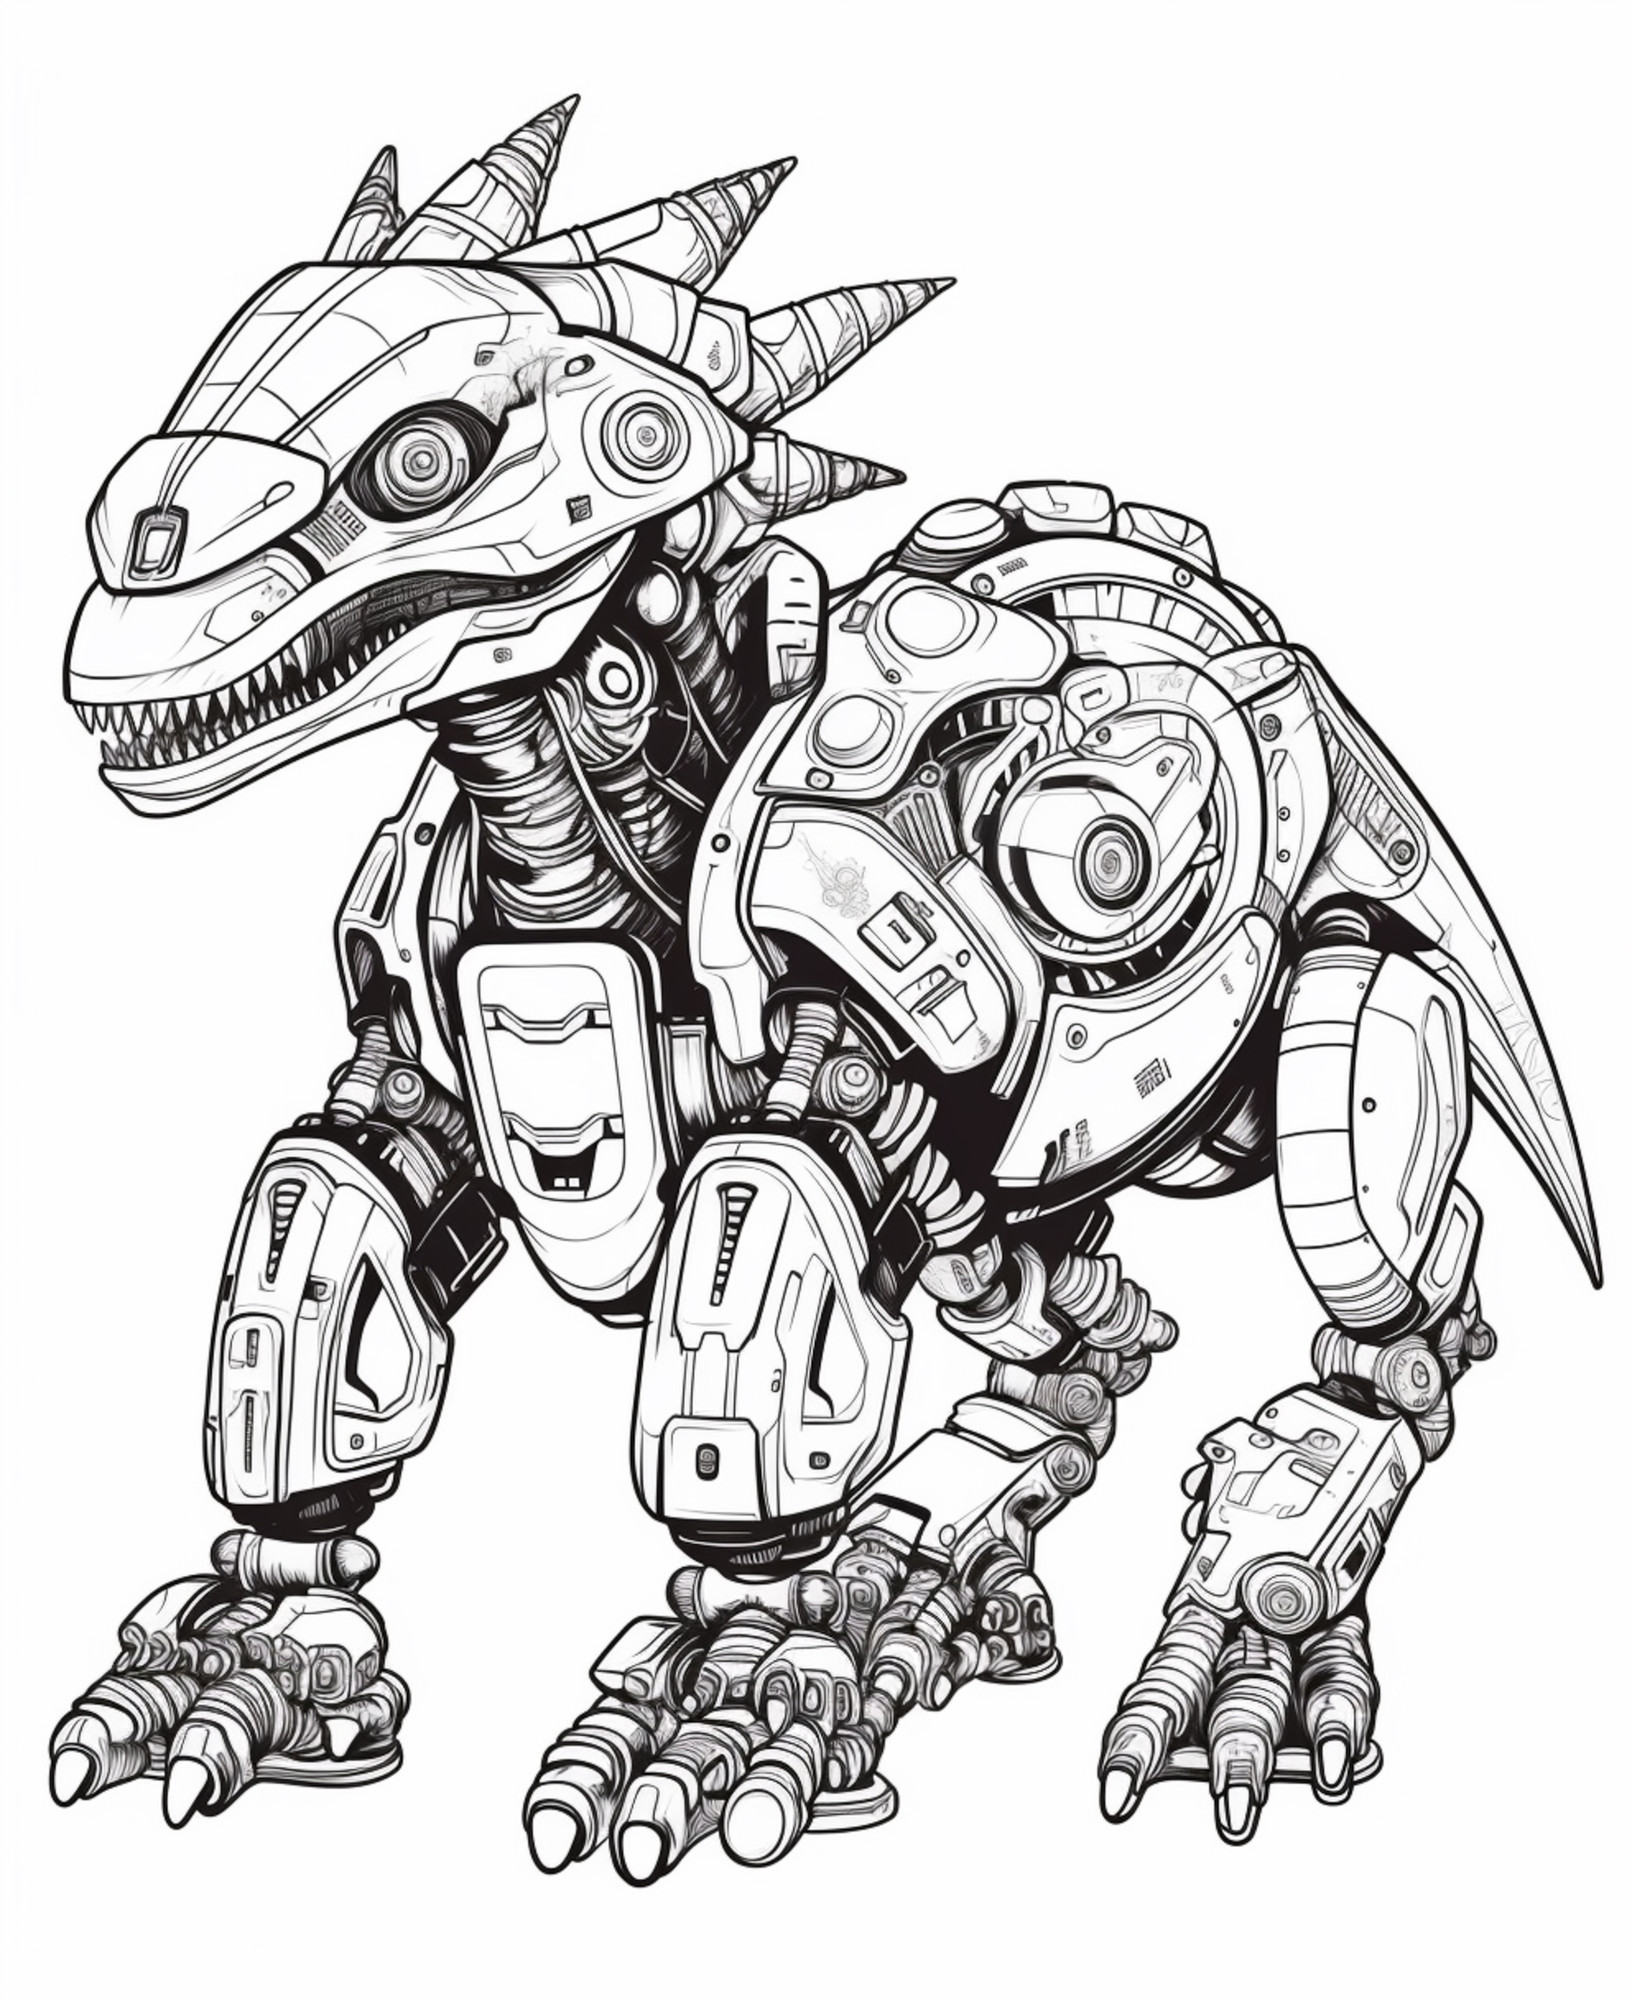 Раскраска для детей: робот трансформер динозавр со шлемом и хвостом